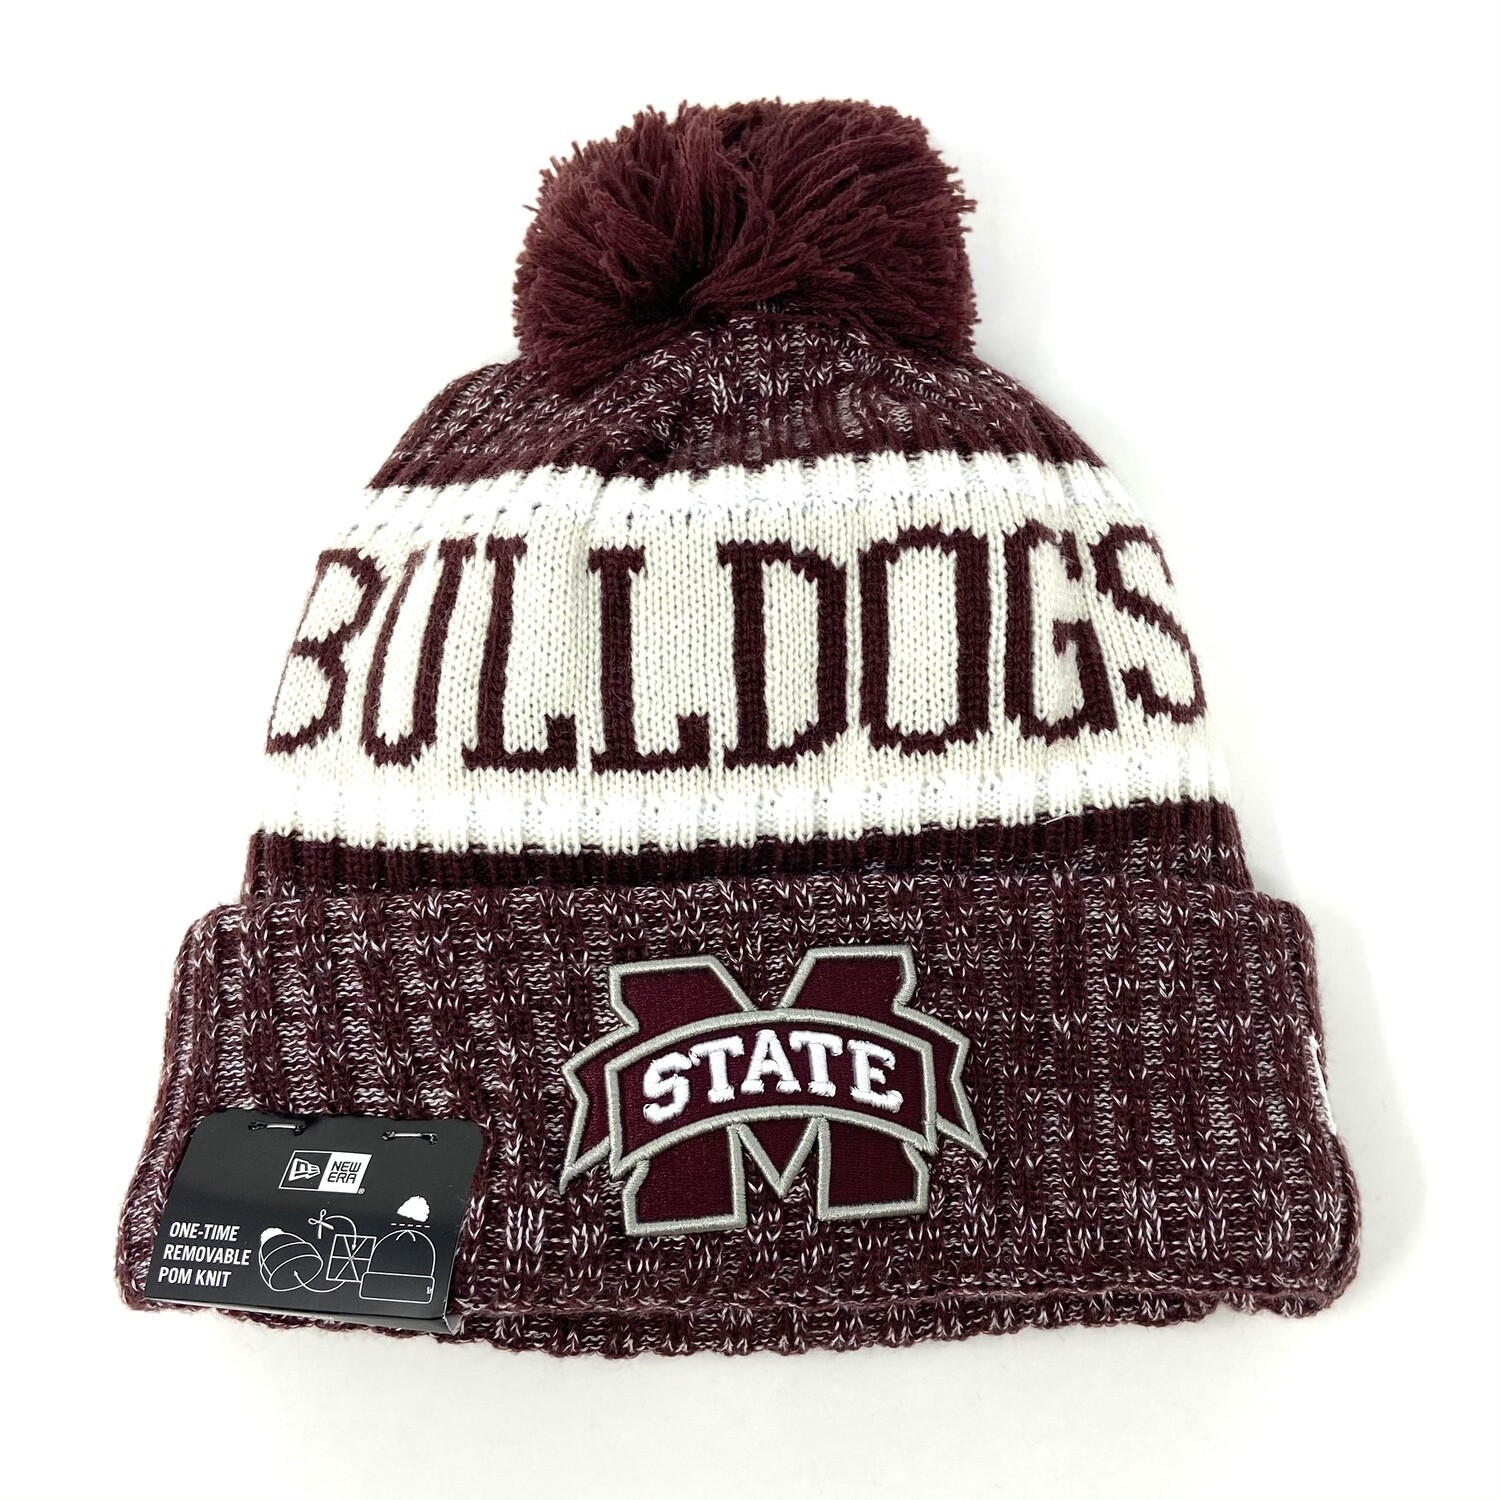 Mississippi State Bulldogs New Era Cuffed Pom Knit Hat